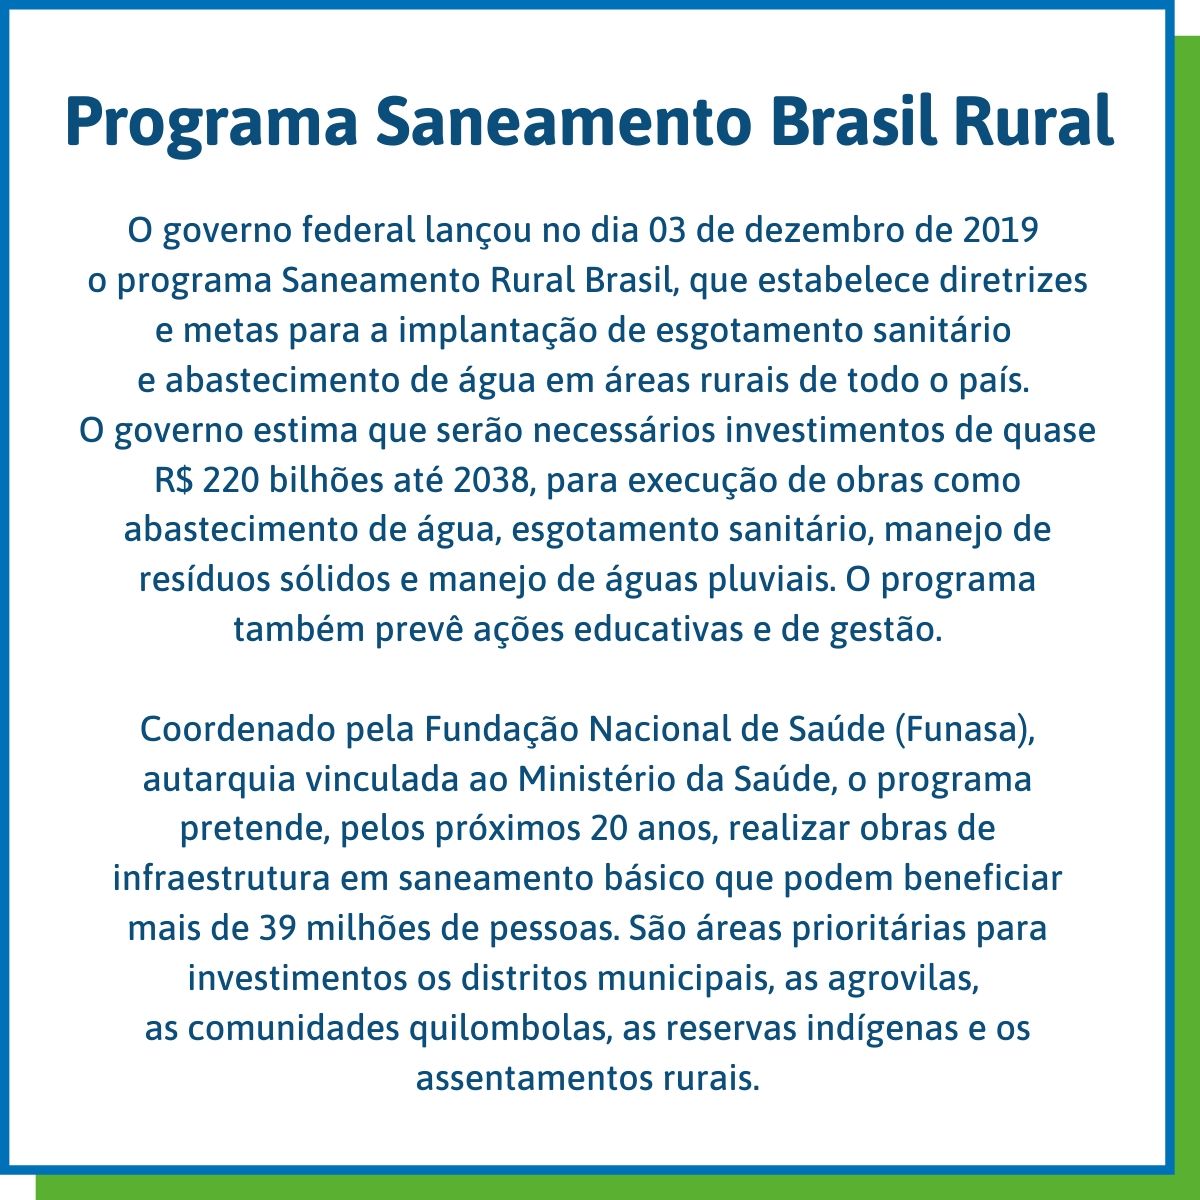 Programa Saneamento Brasil Rural O governo federal lançou no dia 03 de dezembro de 2019 o programa Saneamento Rural Brasil, que estabelece diretrizes e metas para a implantação de esgotamento sanitário e abastecimento de água em áreas rurais de todo o país. O governo estima que serão necessários investimentos de quase R$ 220 bilhões até 2038, para execução de obras como abastecimento de água, esgotamento sanitário, manejo de resíduos sólidos e manejo de águas pluviais. O programa também prevê ações educativas e de gestão. Coordenado pela Fundação Nacional de Saúde (Funasa), autarquia vinculada ao Ministério da Saúde, o programa pretende, pelos próximos 20 anos, realizar obras de infraestrutura em saneamento básico que podem beneficiar mais de 39 milhões de pessoas. São áreas prioritárias para investimentos os distritos municipais, as agrovilas, as comunidades quilombolas, as reservas indígenas e os assentamentos rurais.